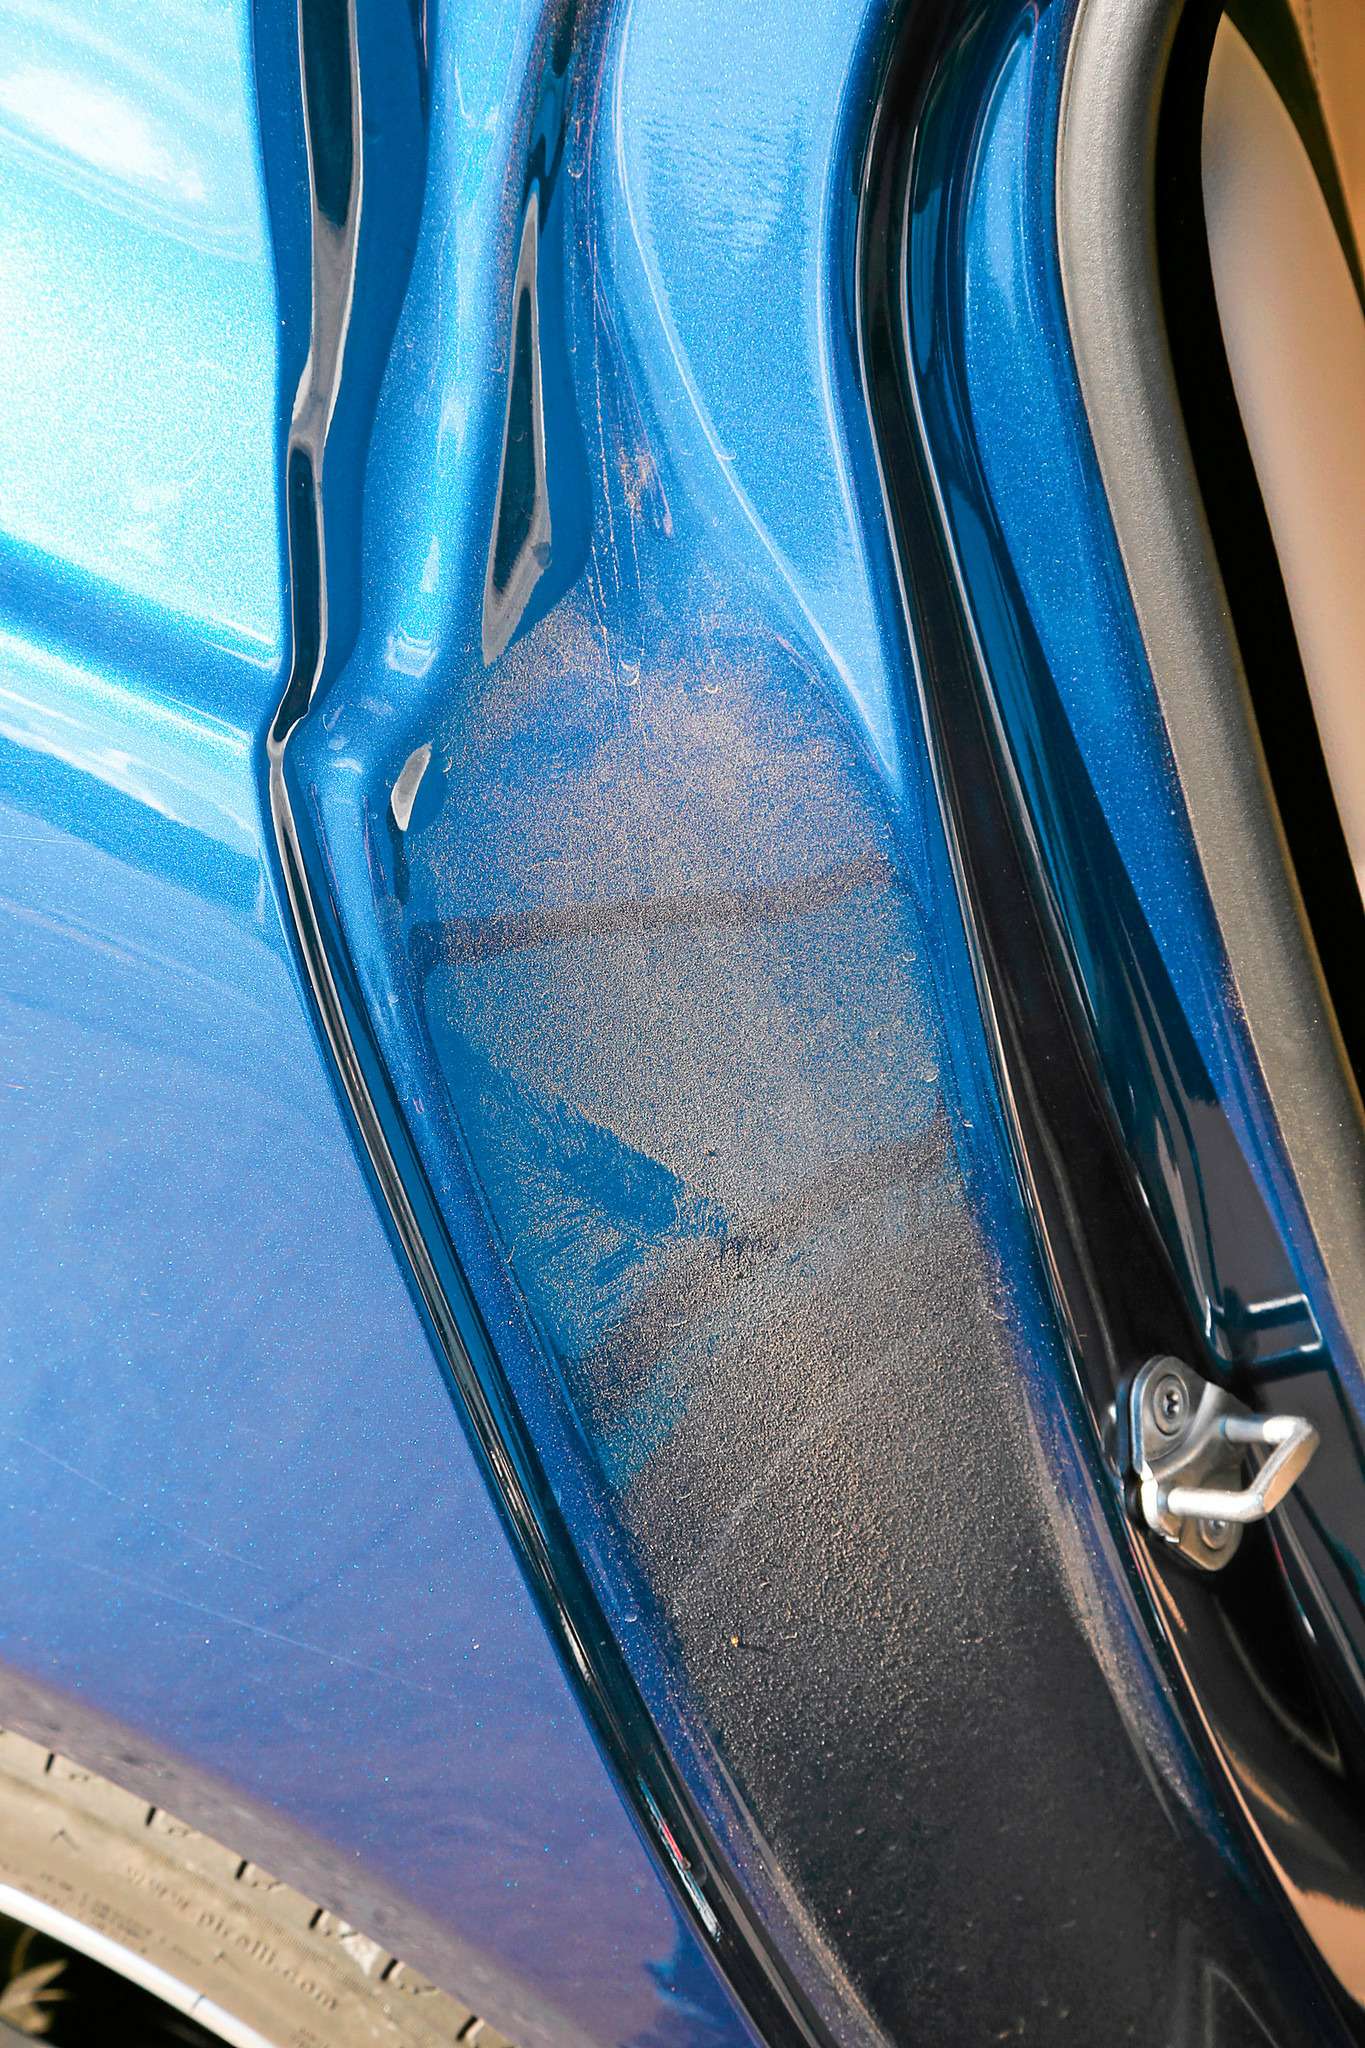 У XE есть проблема с герметичностью – через щели в дверях засасывается пыль, которая потом оседает на арках.